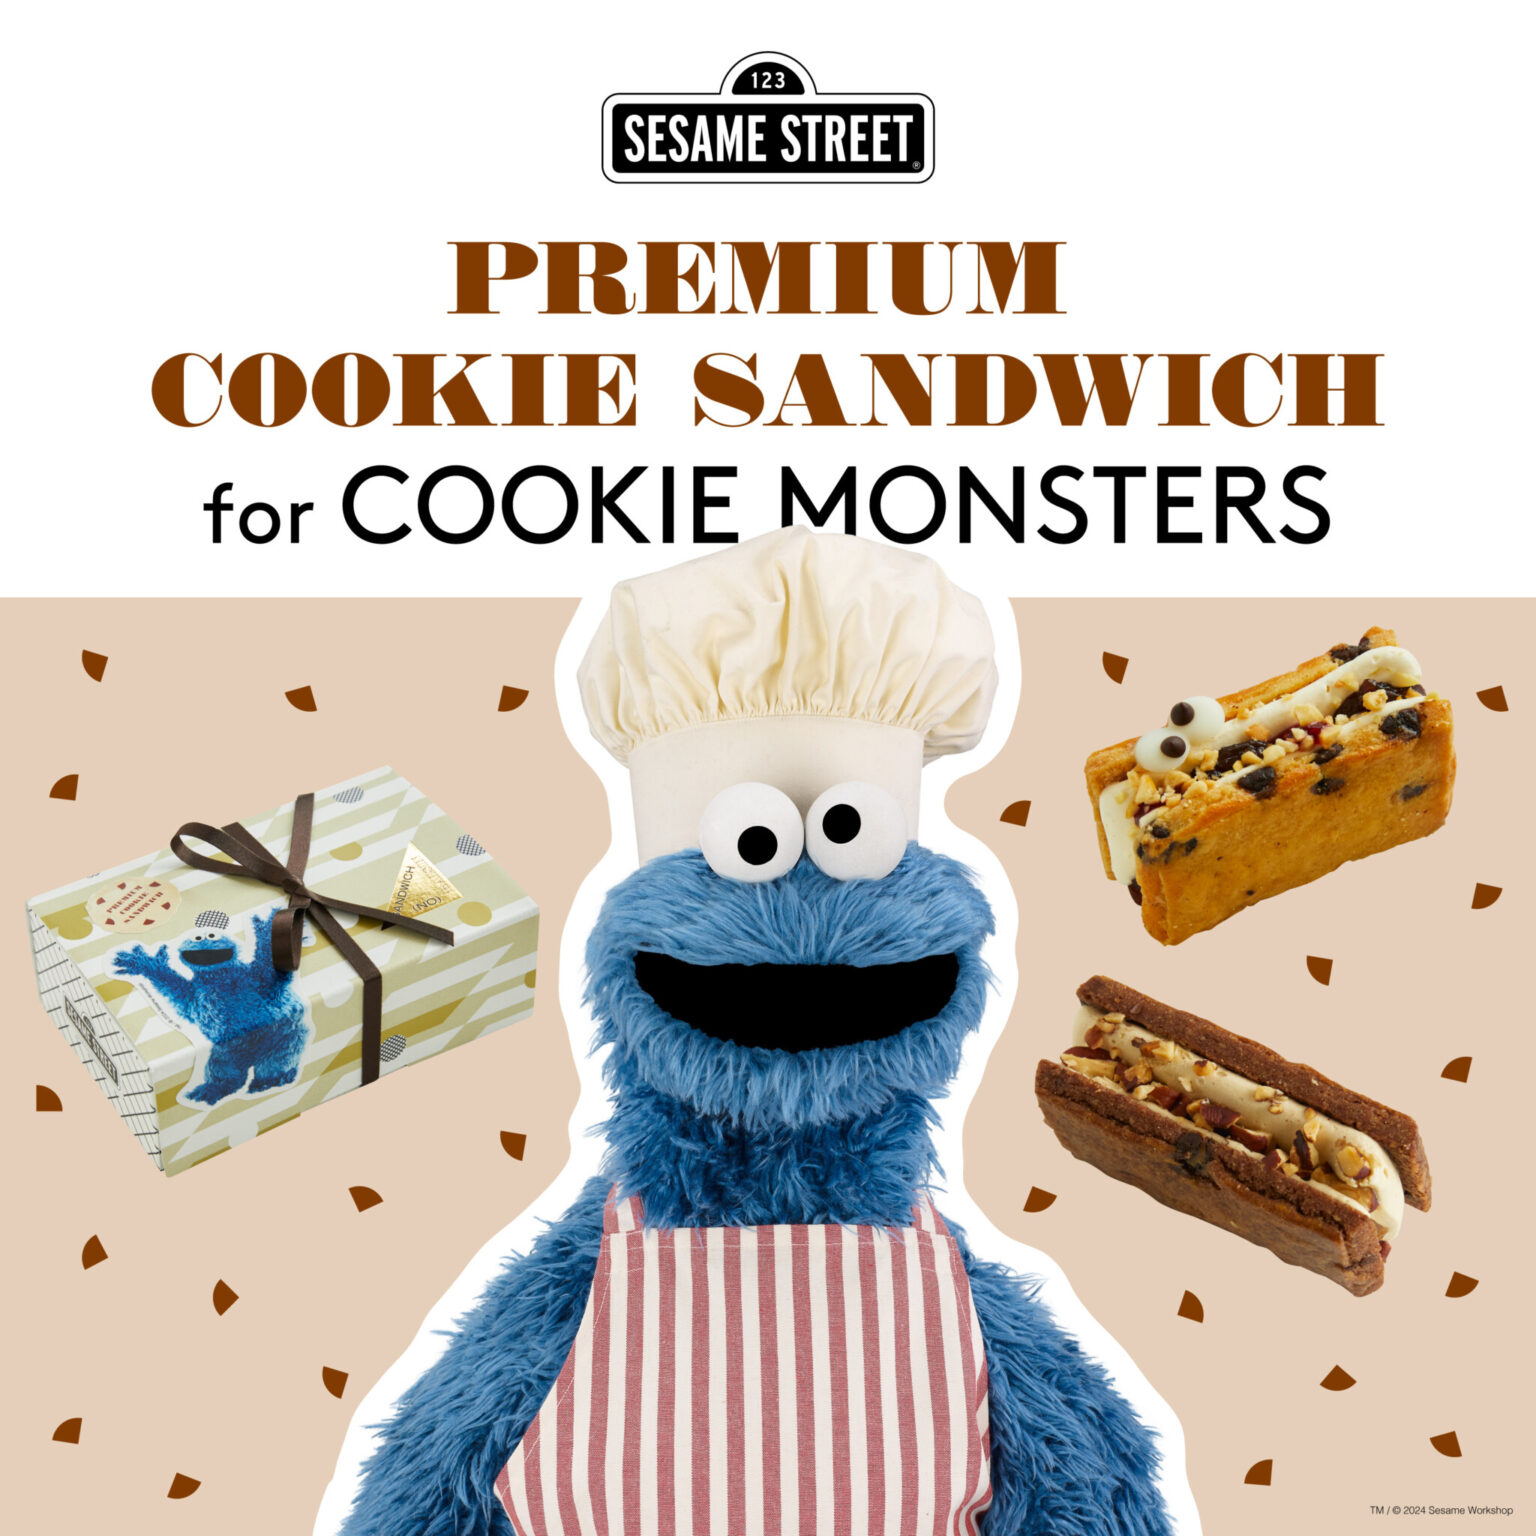 2024年4月14日からは、セサミストリートとのコラボレーションで、クッキーモンスターのためのチョコチップクッキーサンド
「プレミアムクッキーサンドイッチ for クッキーモンスターズ 」が発売。クッキーモンスターの大ファンである平野さん念願の企画。